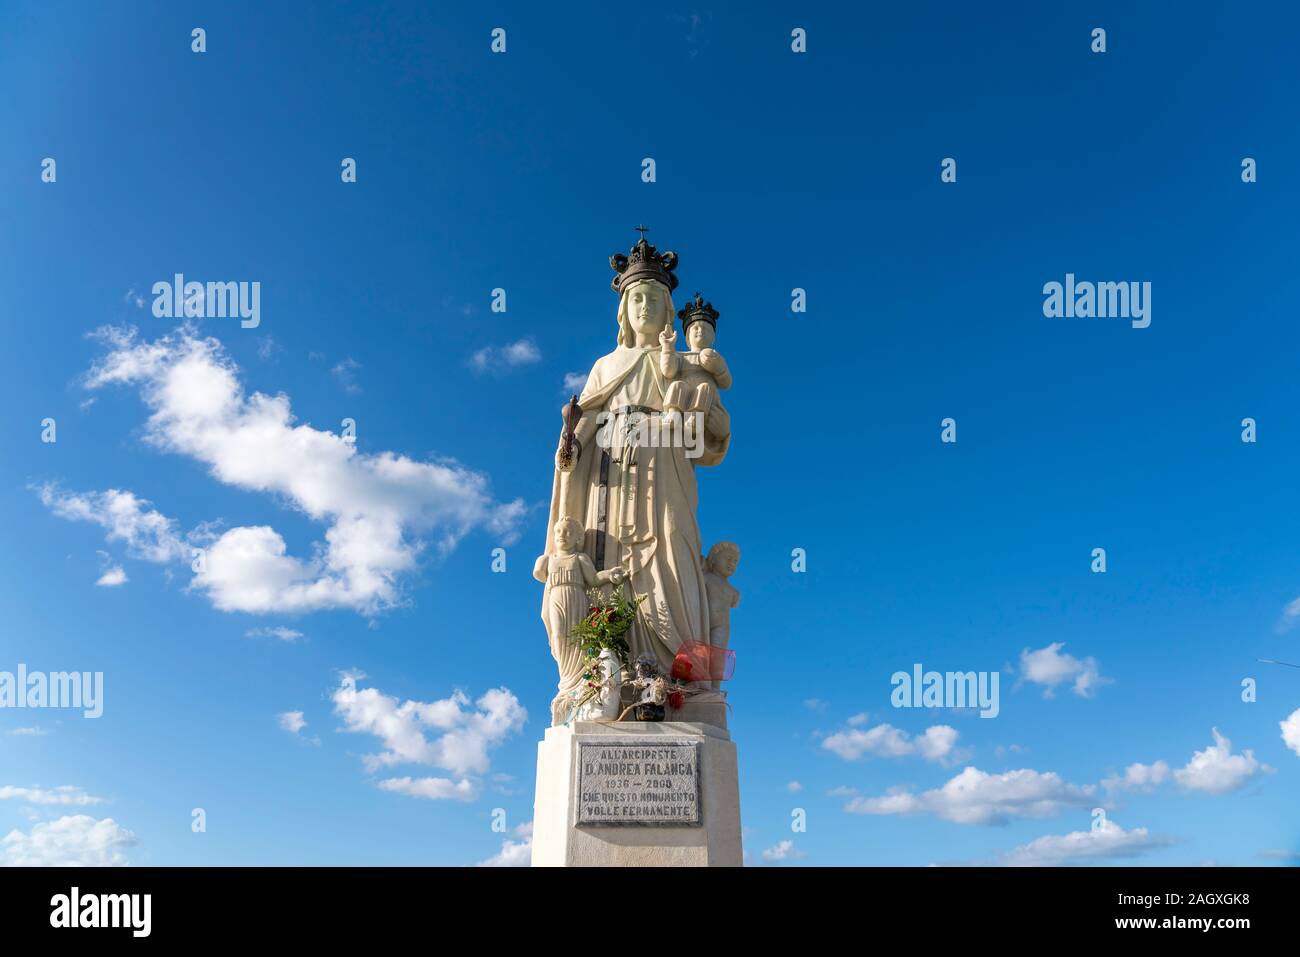 Denkmal im Hafen von Sciacca, Agrigent, Sizilien, Italien, Europa | Monumento al porto a Sciacca, Agrigento, Sicilia, Italia, Europa Foto Stock